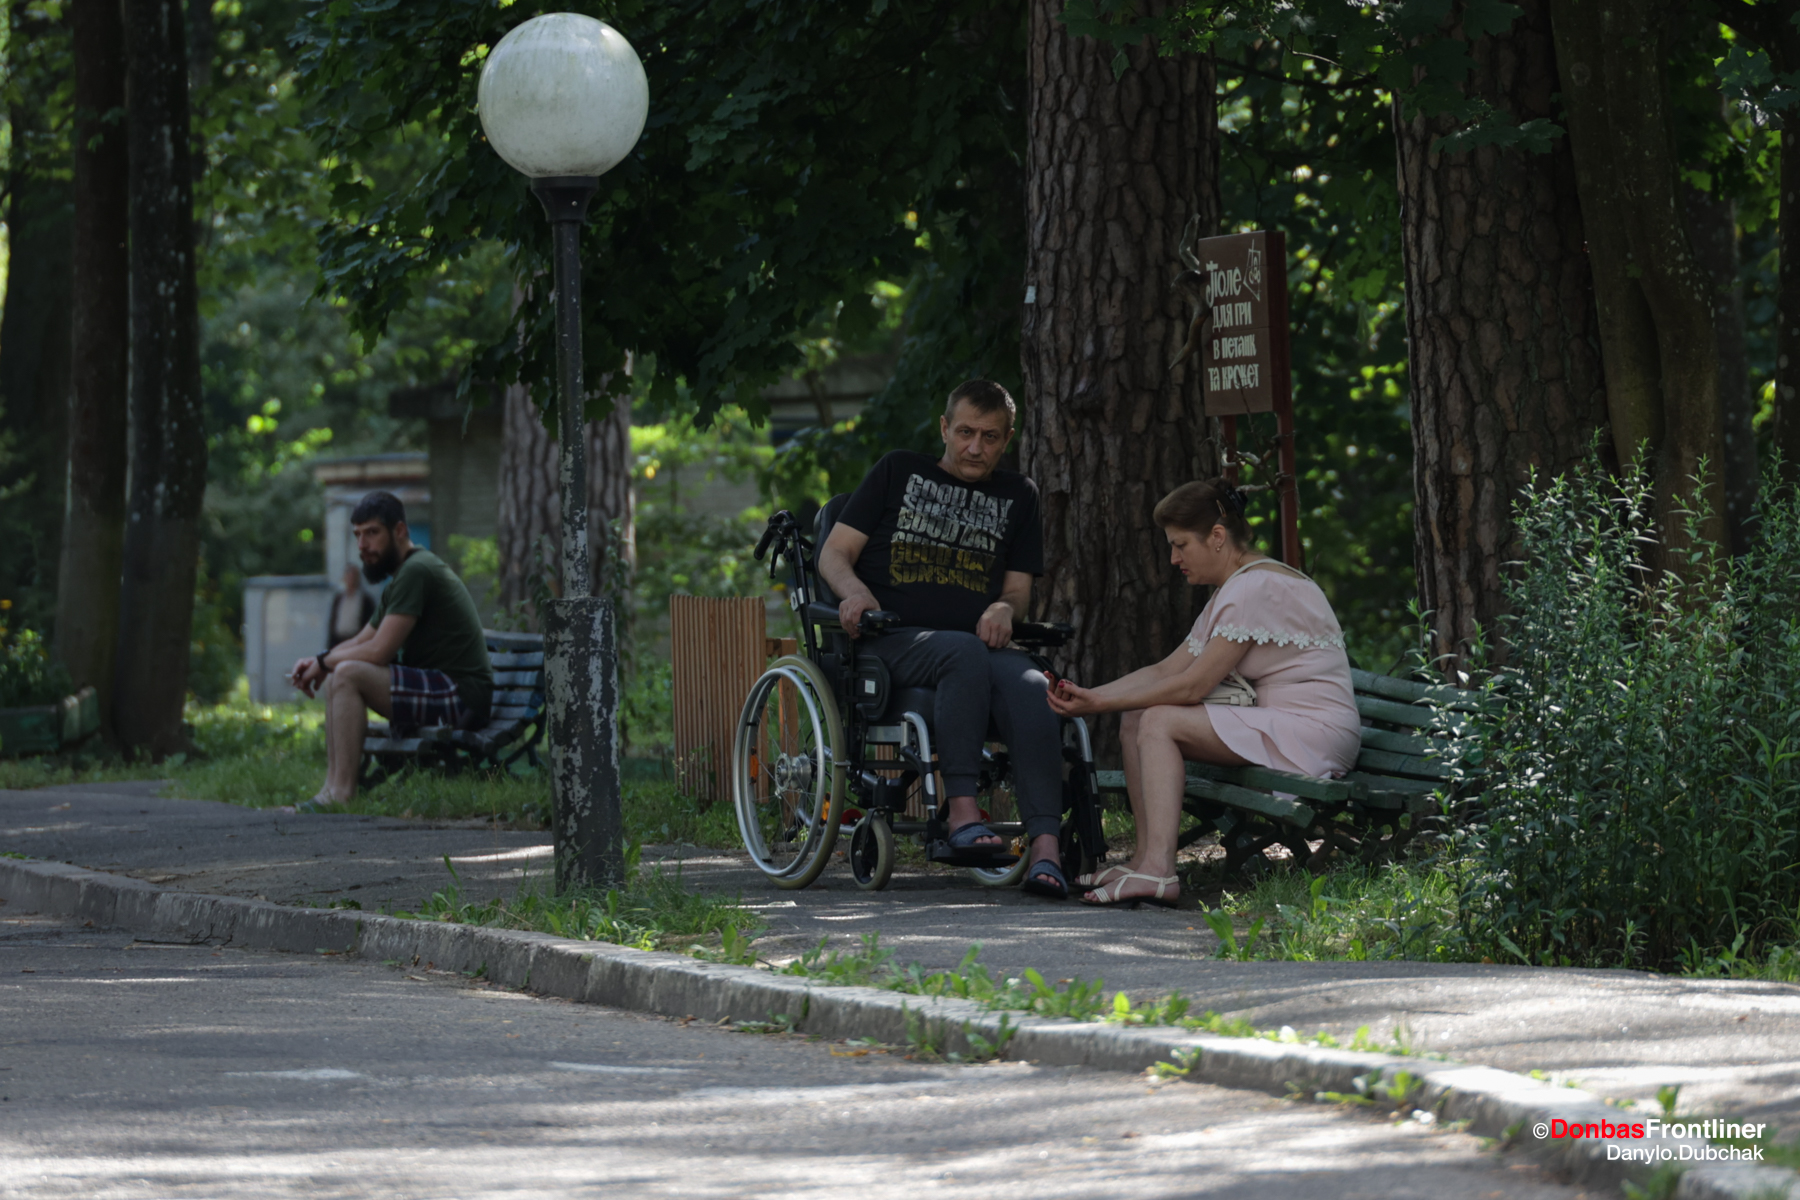 Donbas Frontliner / Сквер, де пацієнти відпочивають та зустрічаються з рідними, друзями
